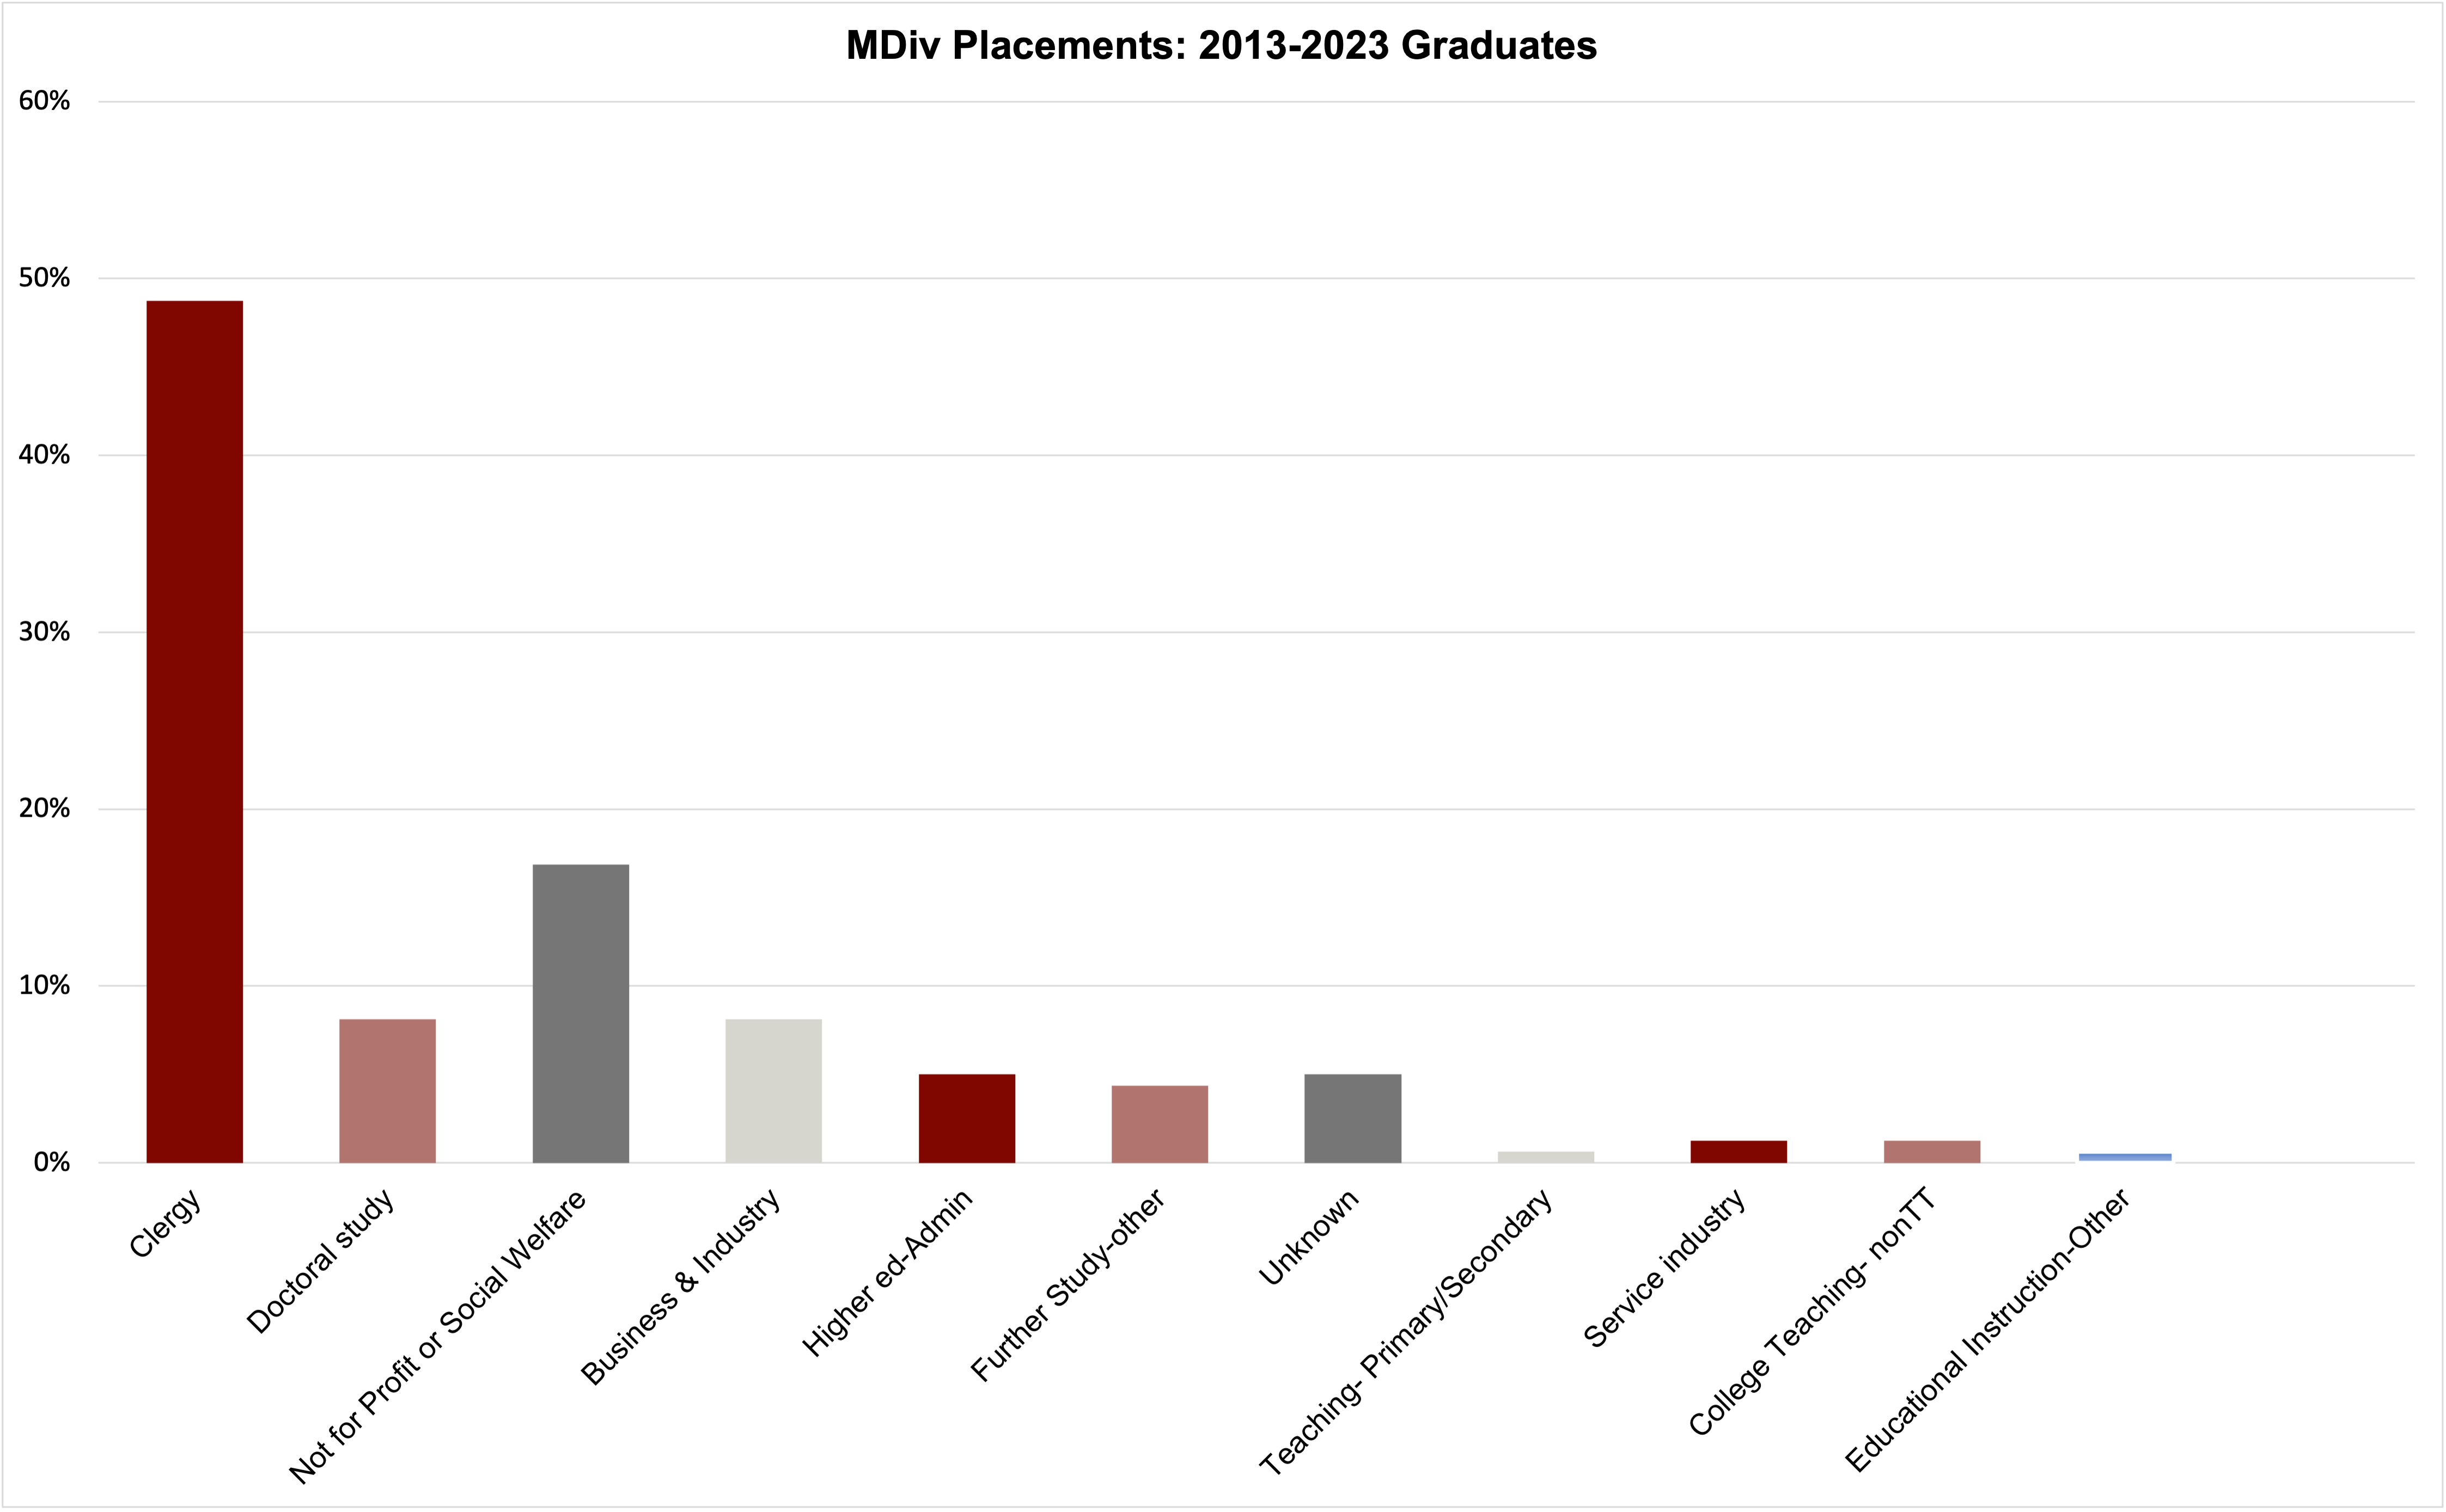 MDiv Placements 2013-2023 graduates graph